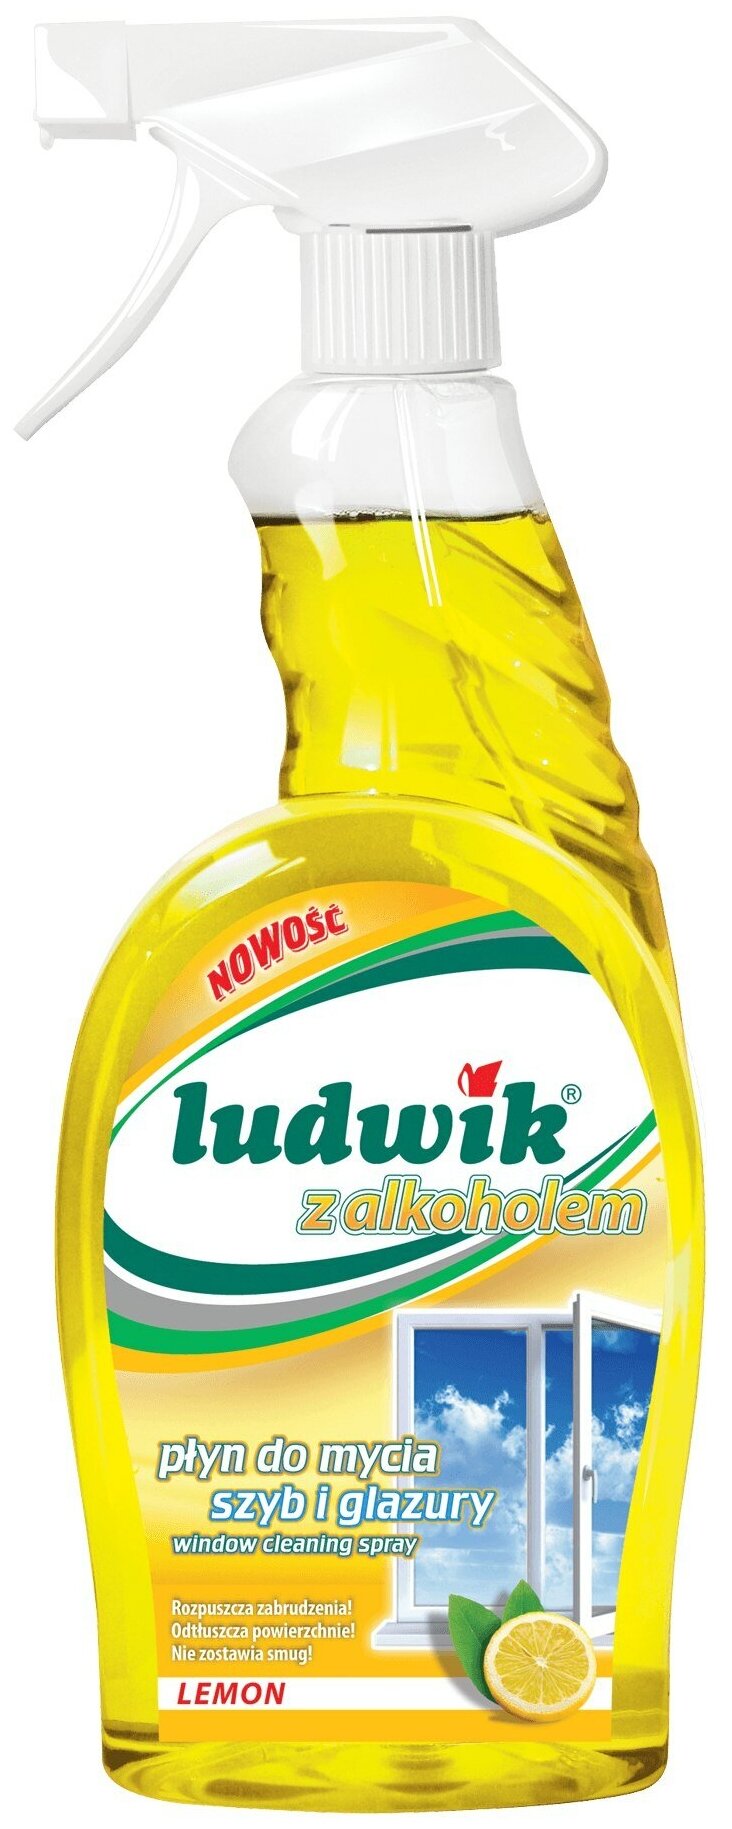 Ludwik средство для мытья стекол, плитки, спрей, 750 мл